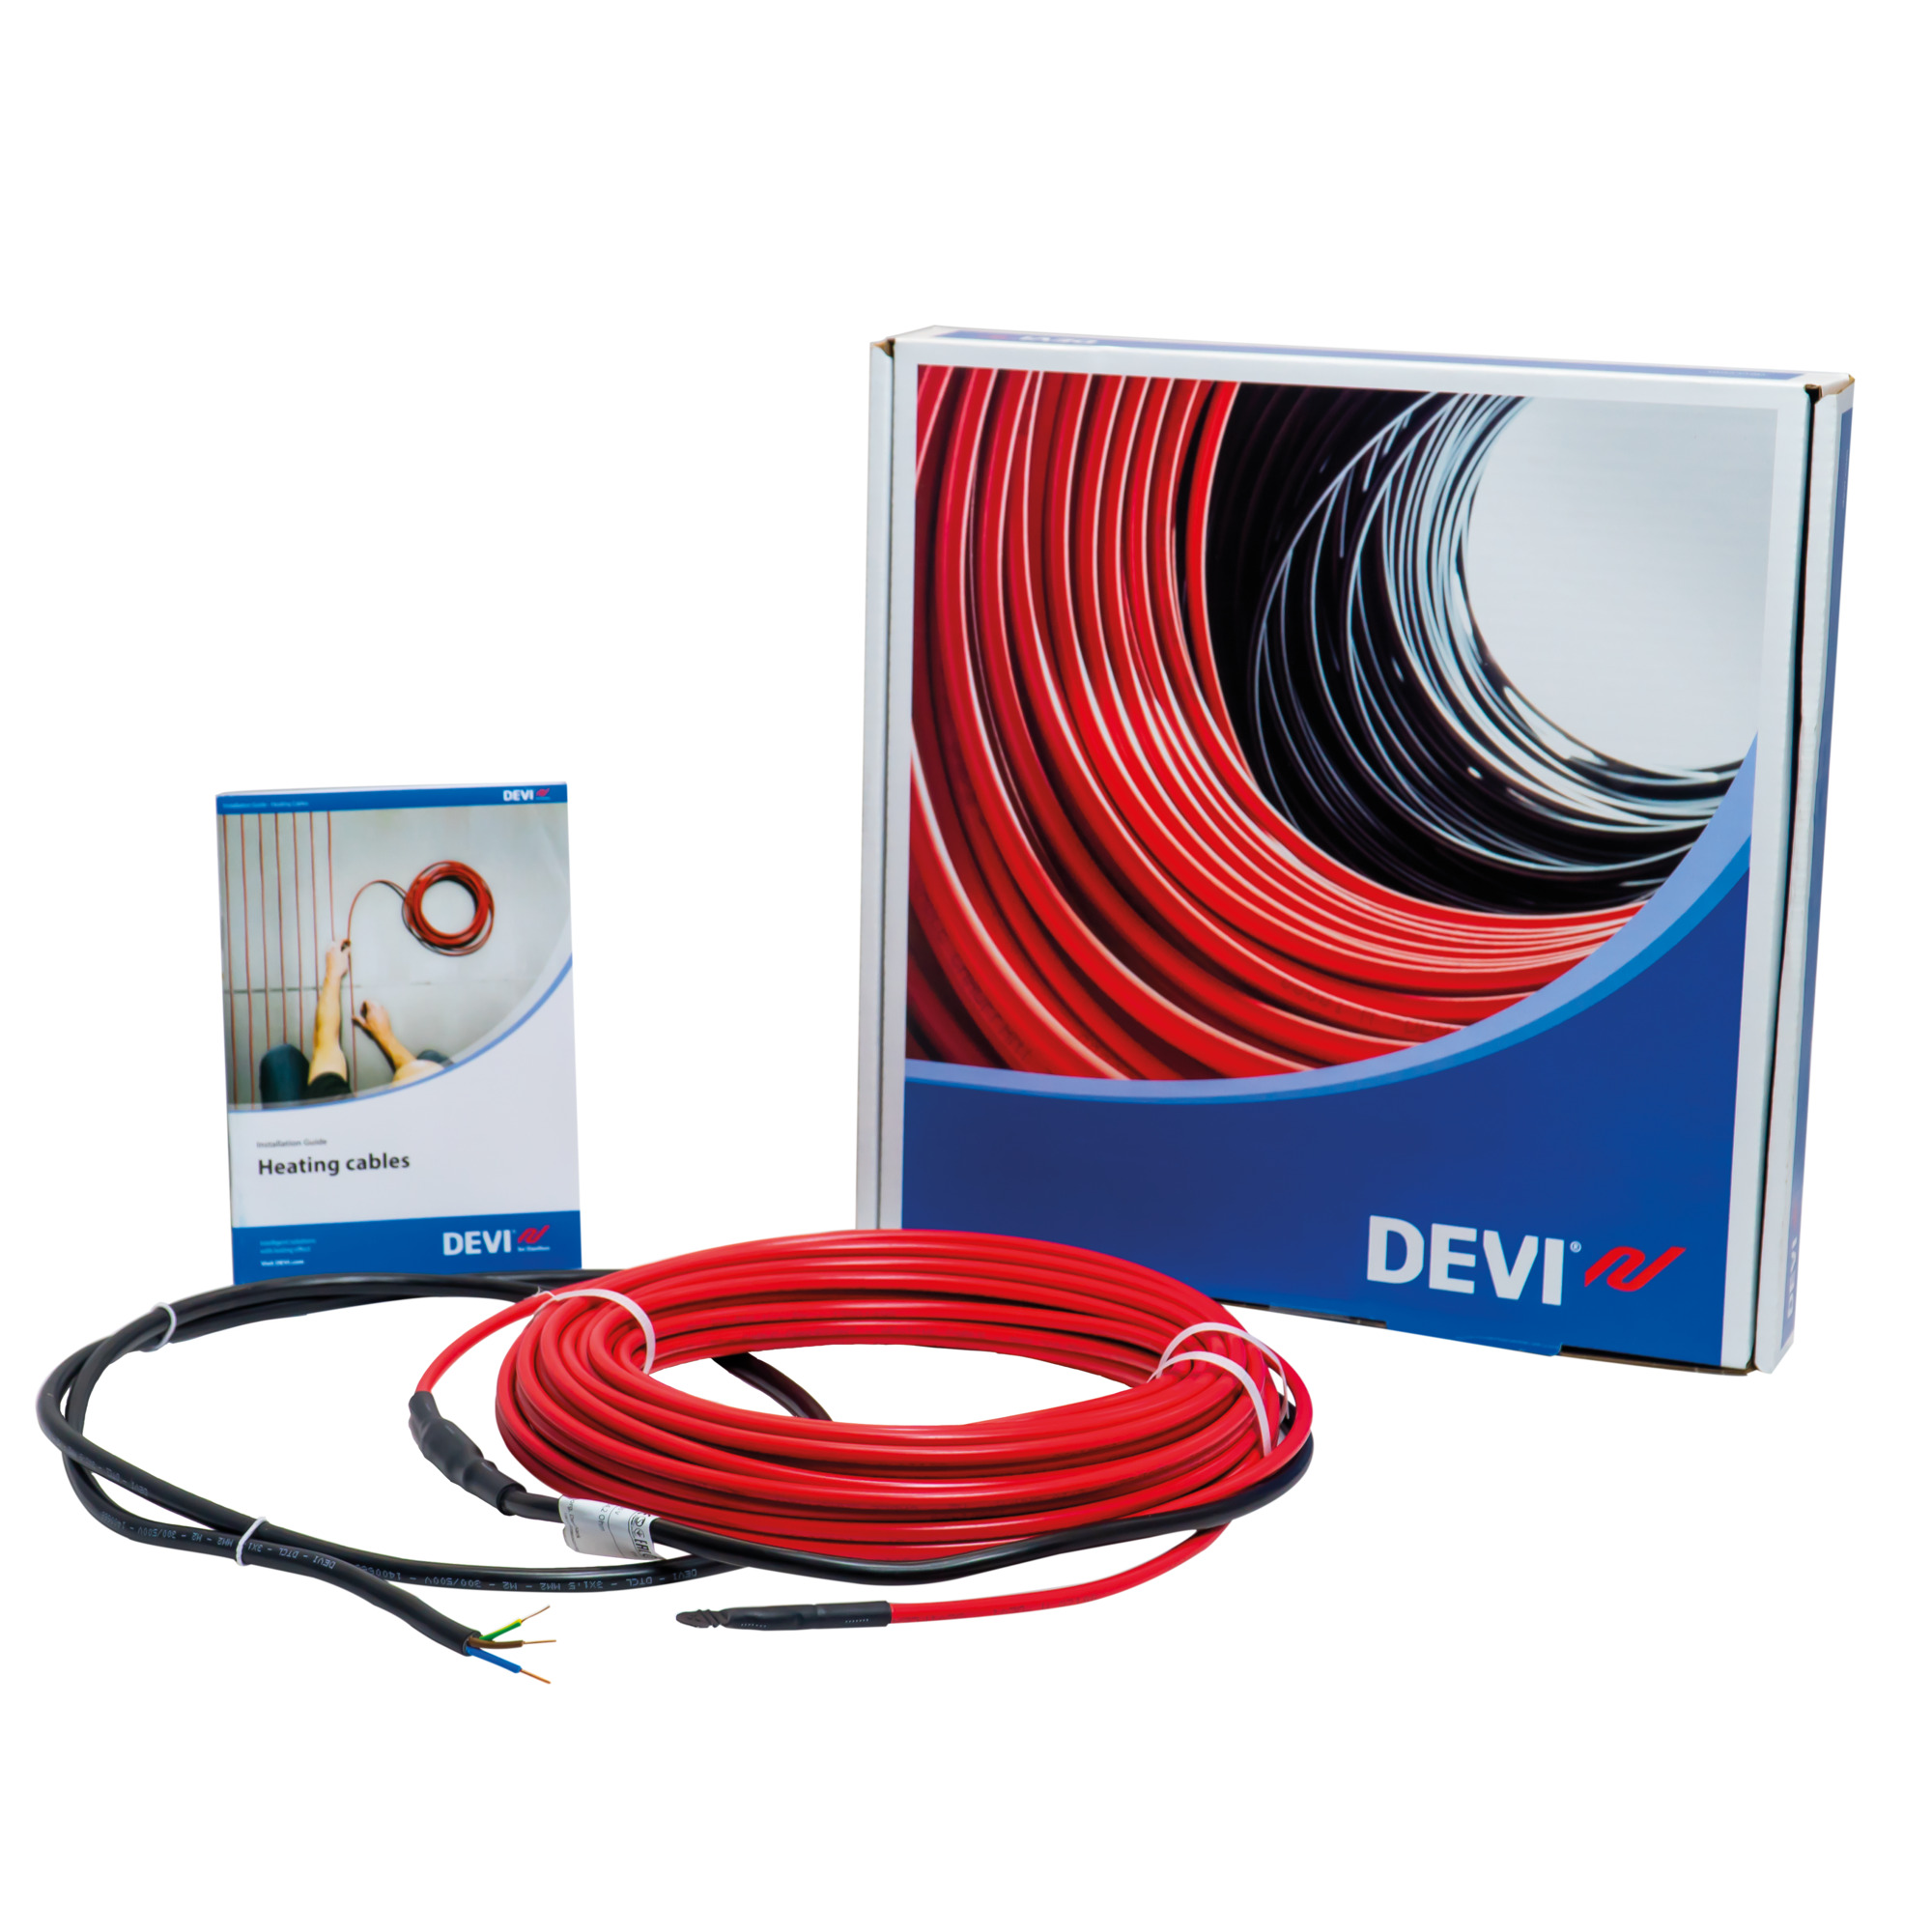 DEVI DEVIflex 18T нагревательный кабель 130 Вт 230 В 7.3 м (81947663 .